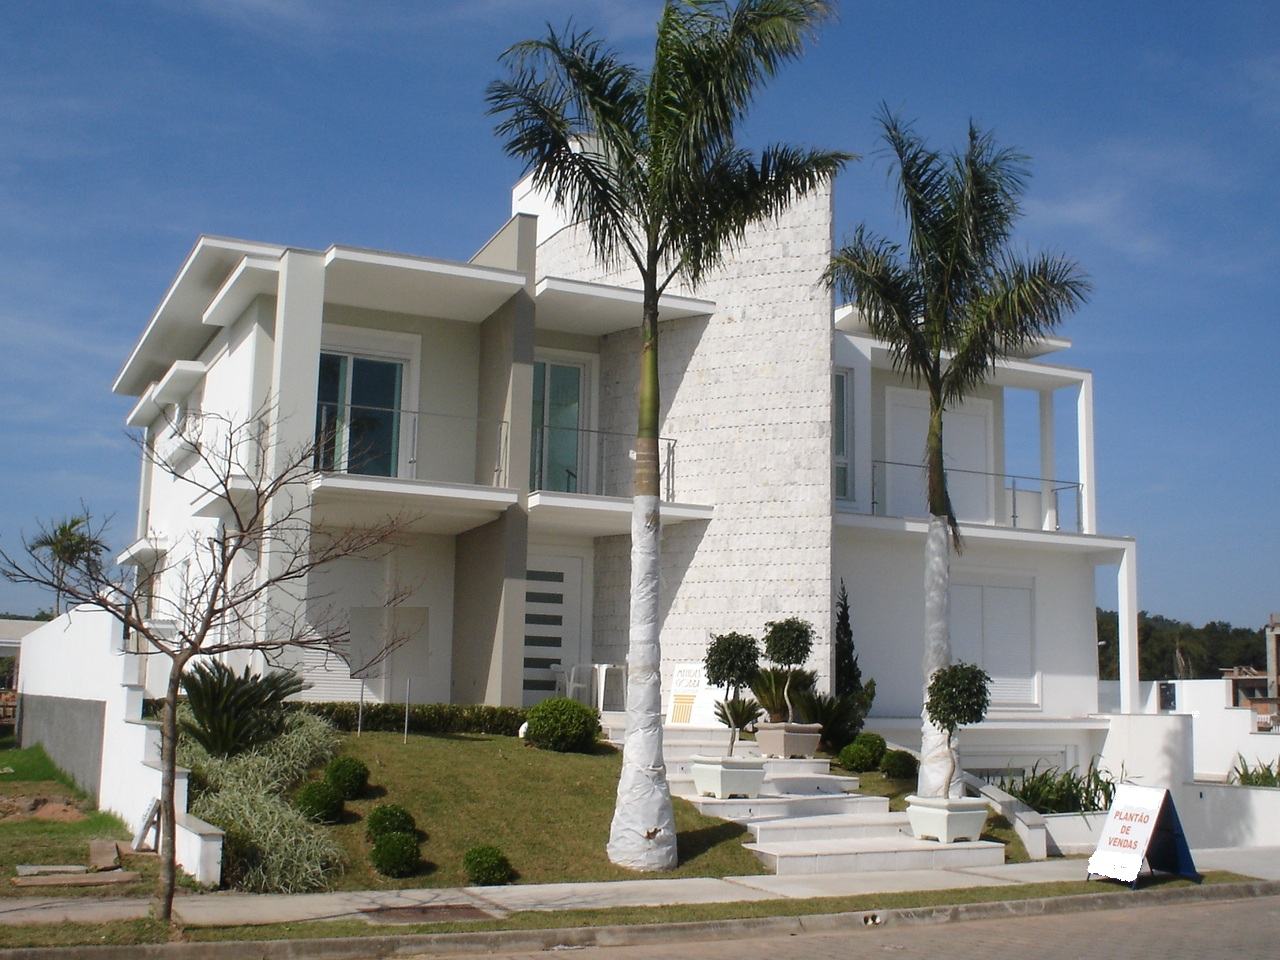 Casa moderna brasileira com dois andares